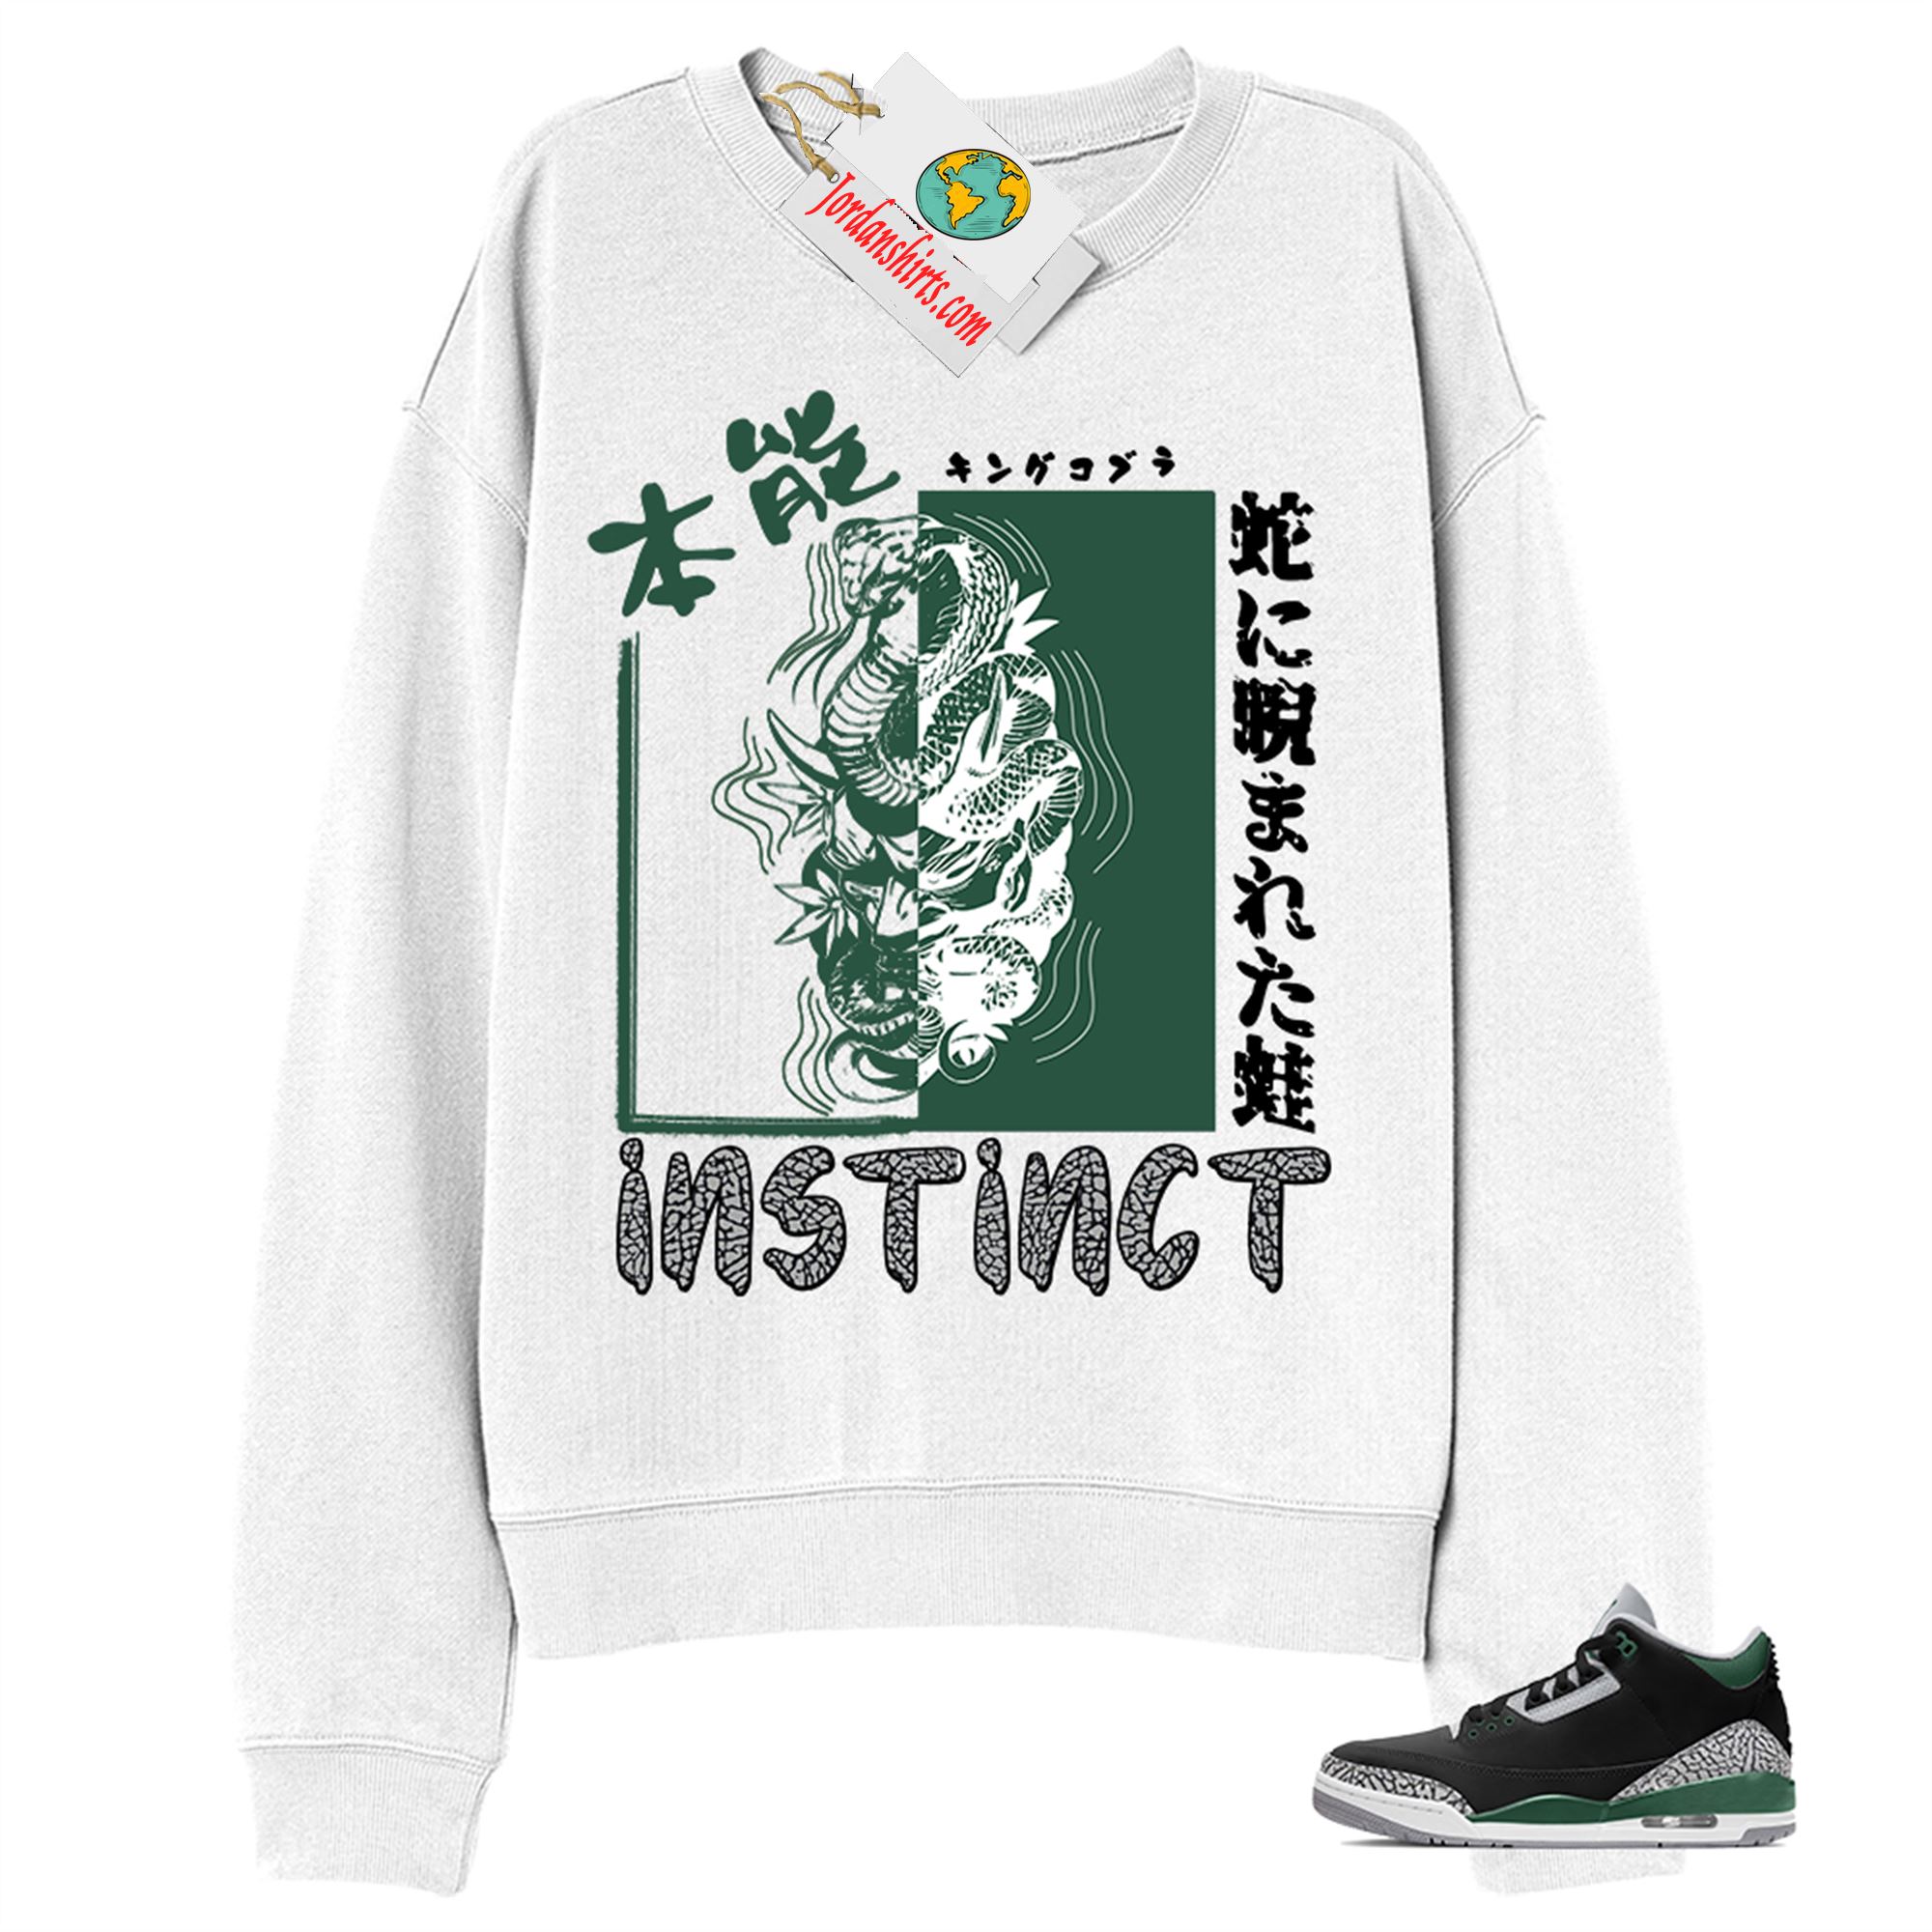 Jordan 3 Sweatshirt, Instinct Fearless Snake White Sweatshirt Air Jordan 3 Pine Green 3s Size Up To 5xl